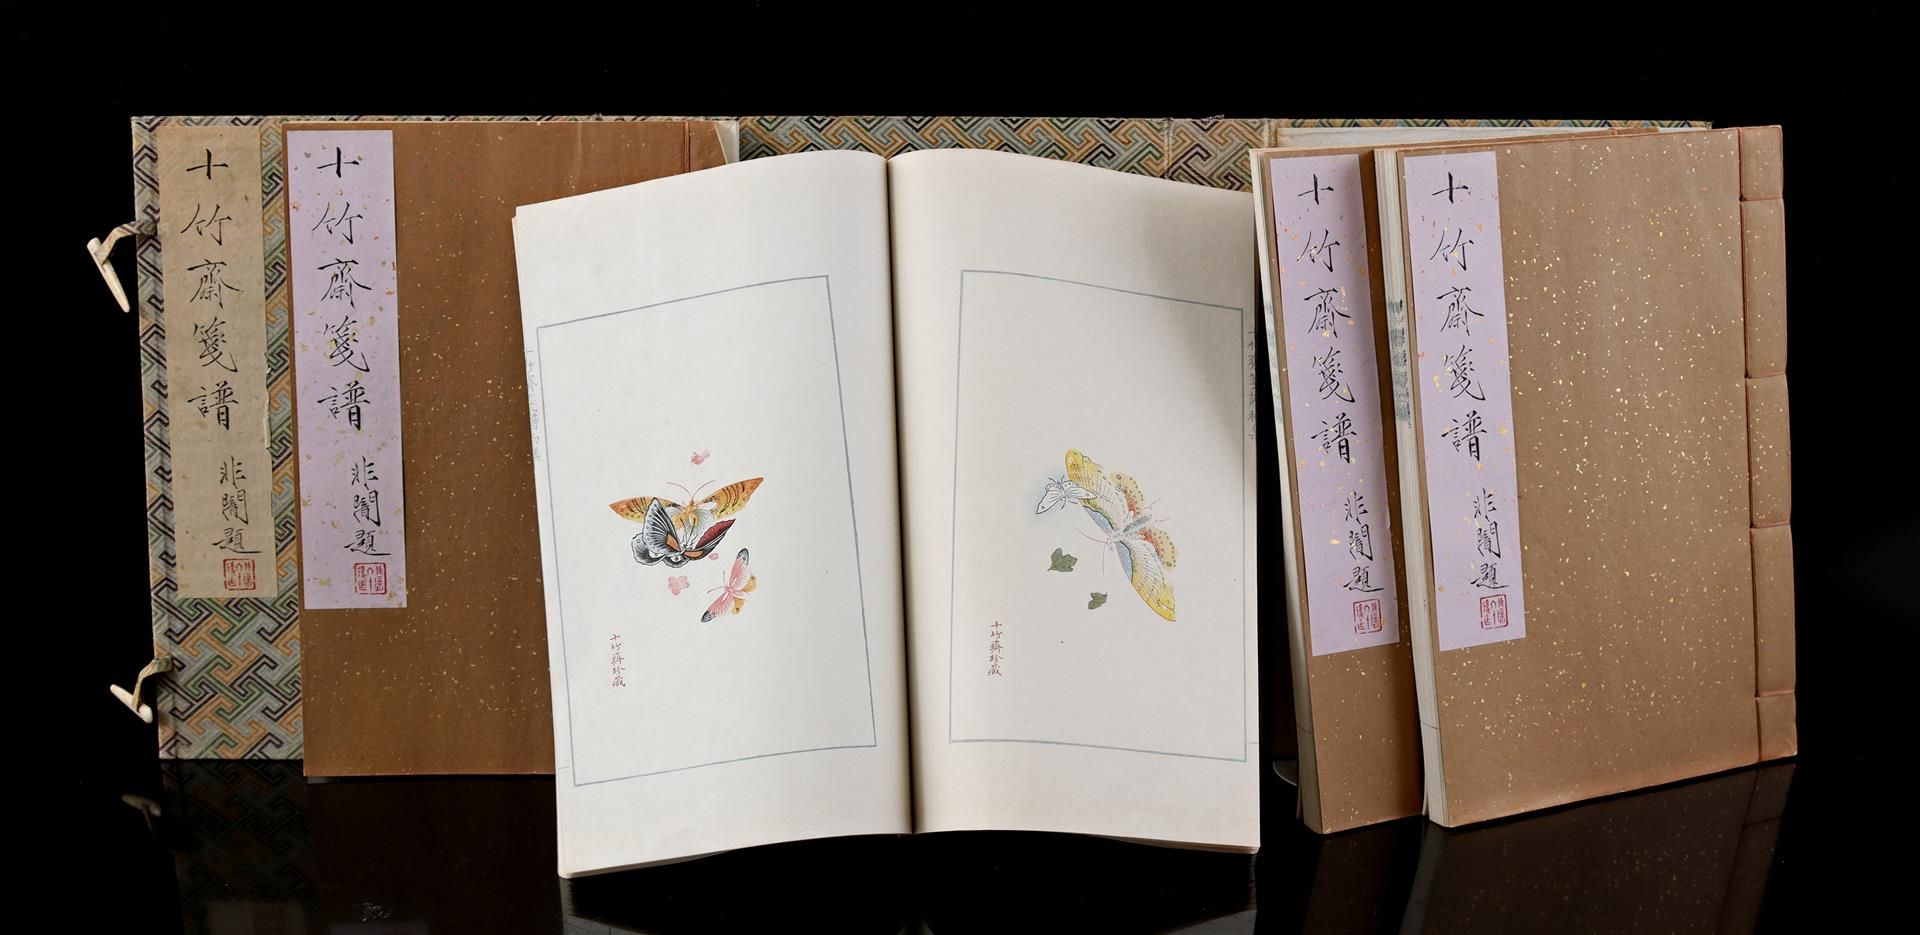 The Ten Bamboo Studio Catalogue, Shizhuzhai Jianpu